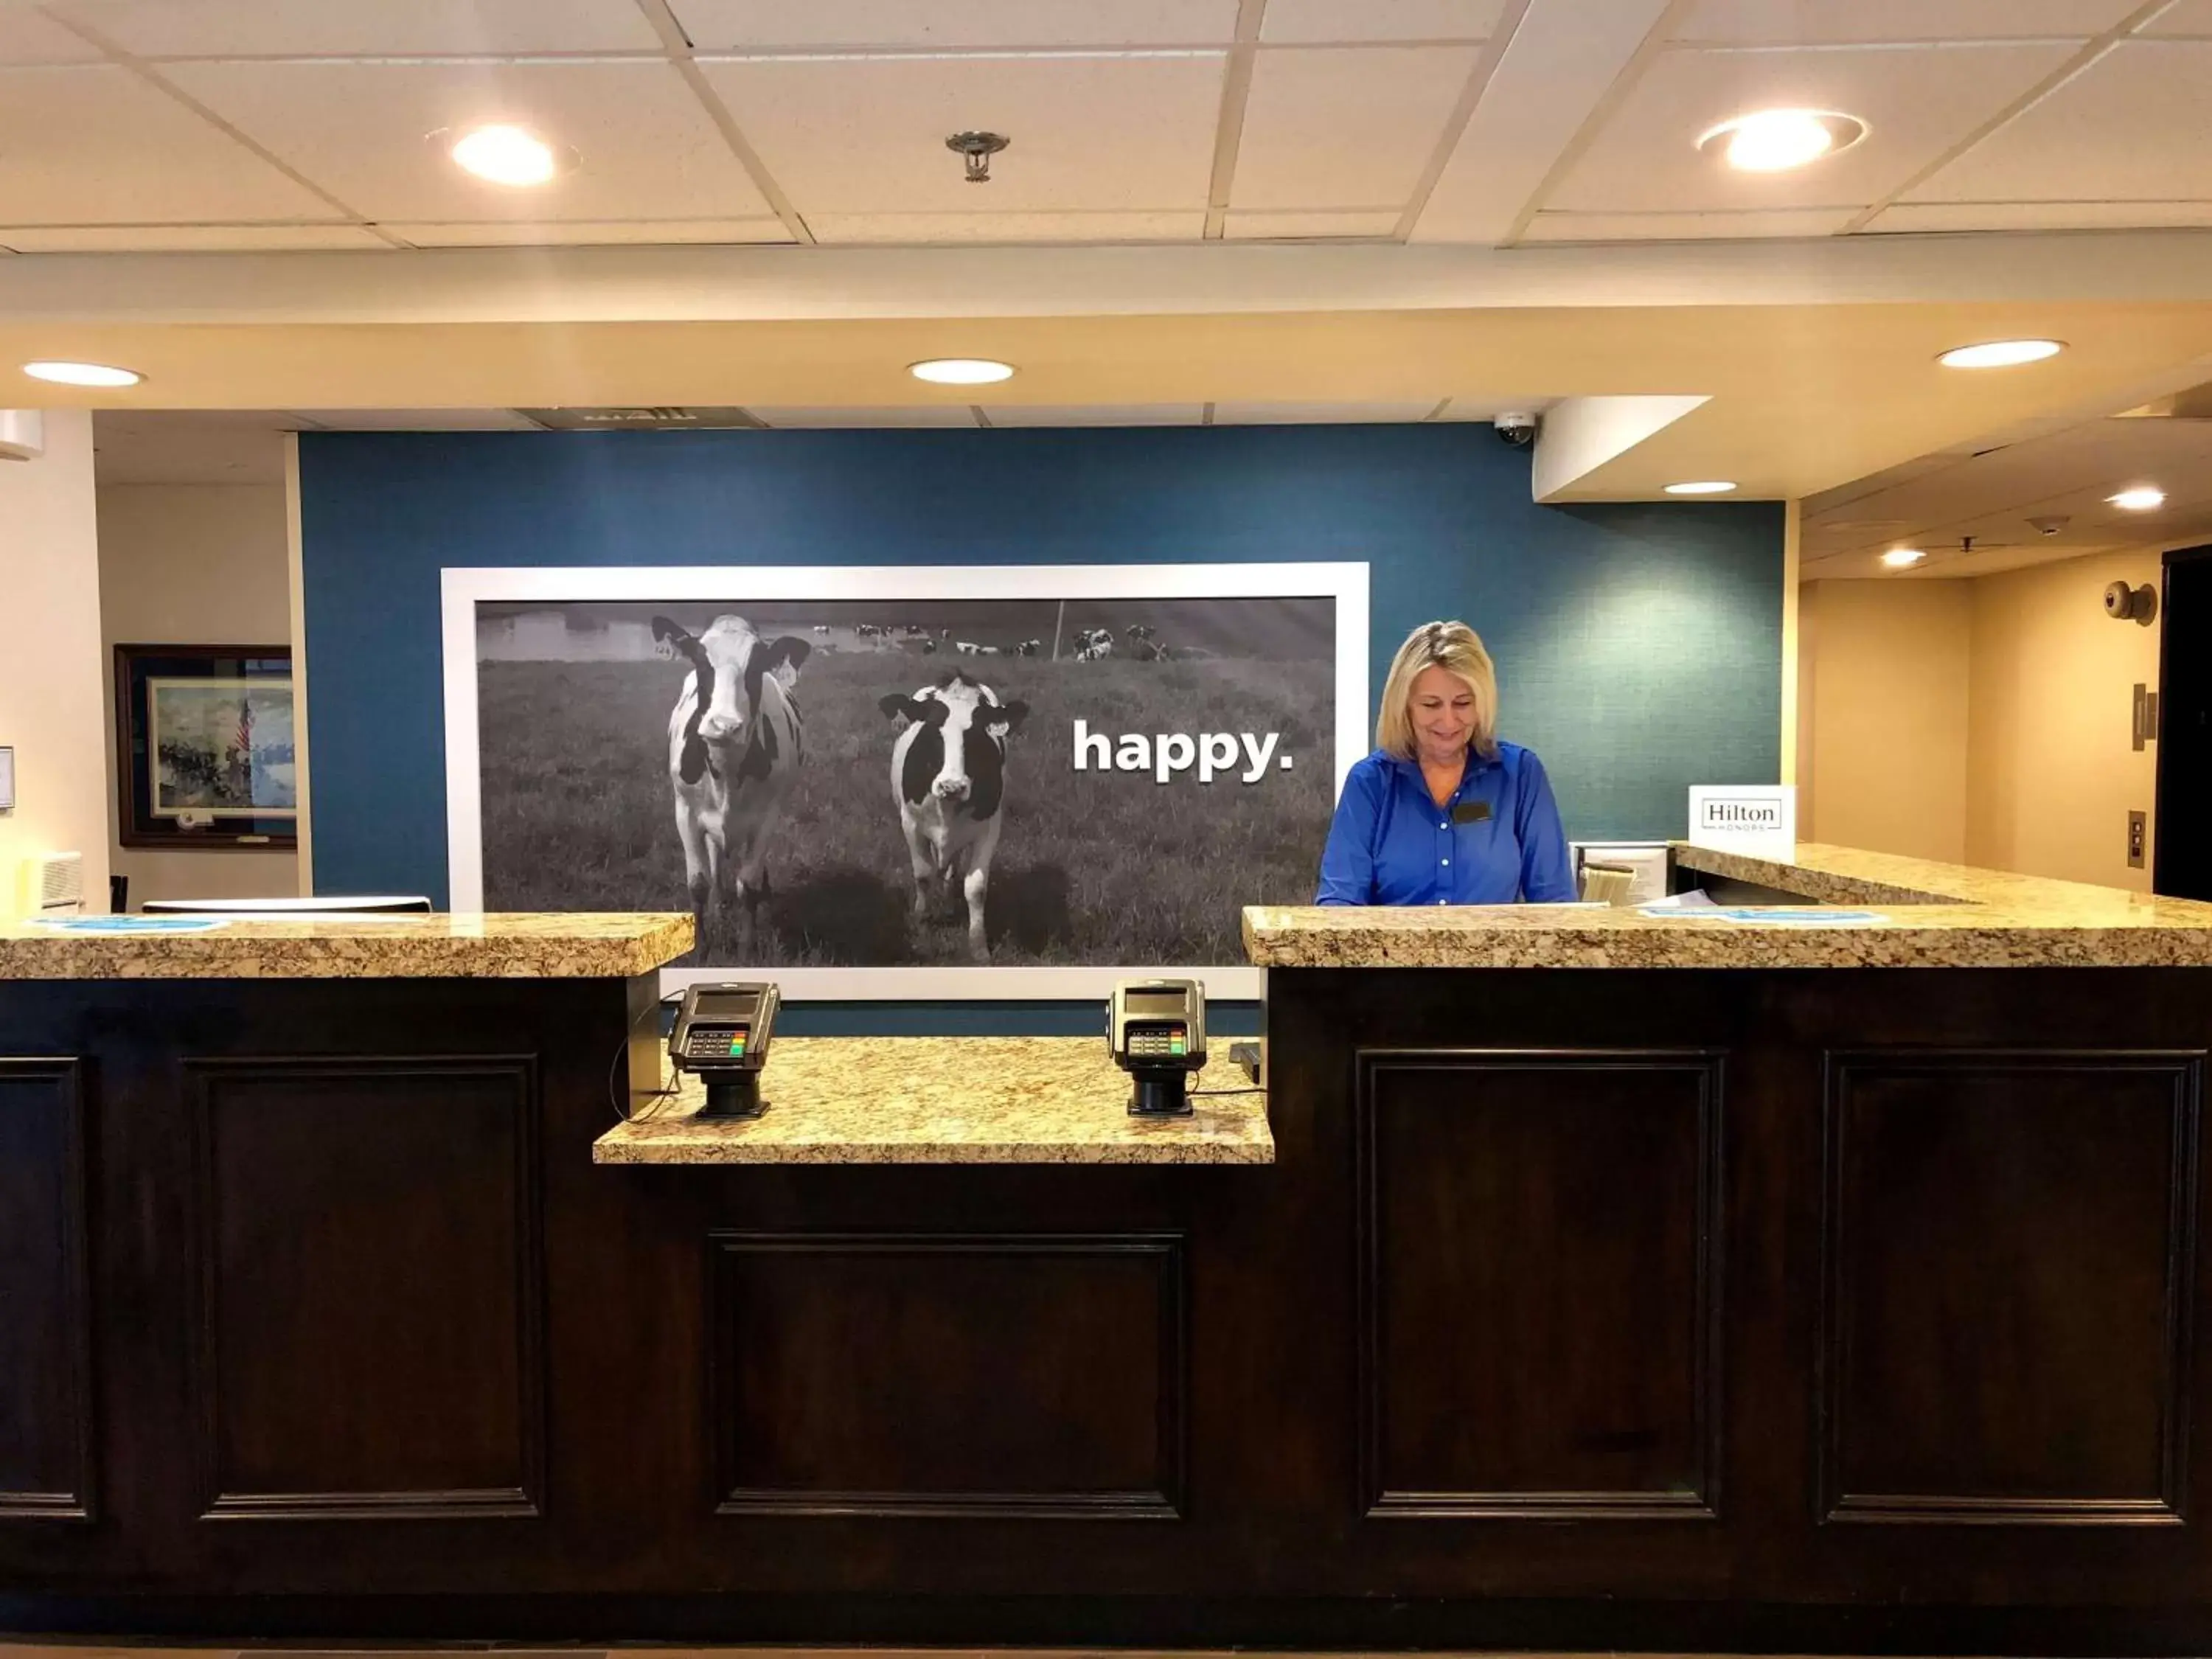 Lobby or reception, Lobby/Reception in Hampton Inn Gettysburg